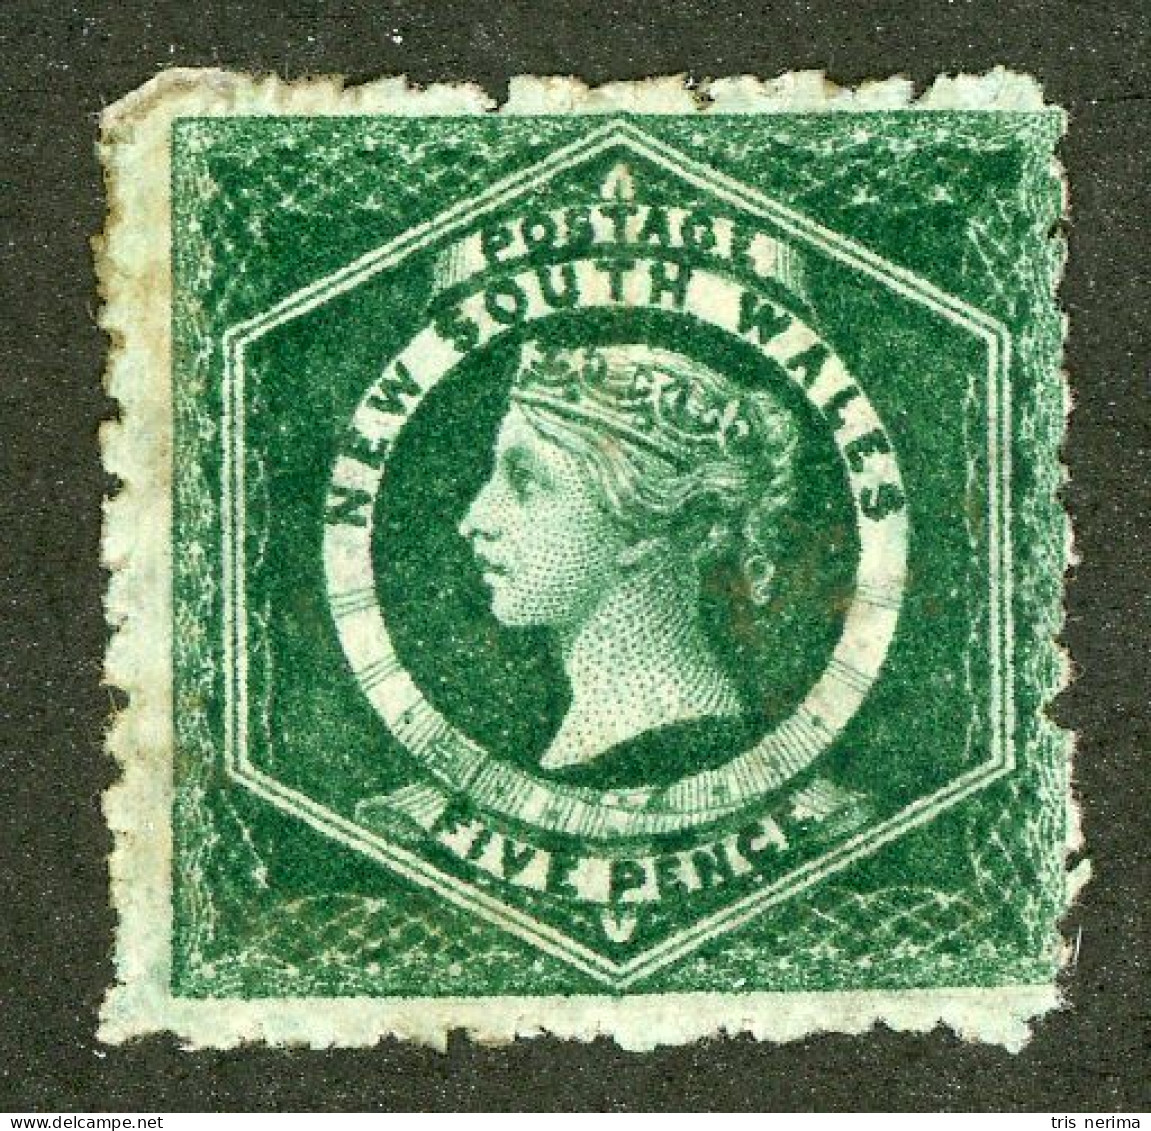 4982 BCx NSW 1884 Scott 56 Mint* (Lower Bids 20% Off) - Mint Stamps